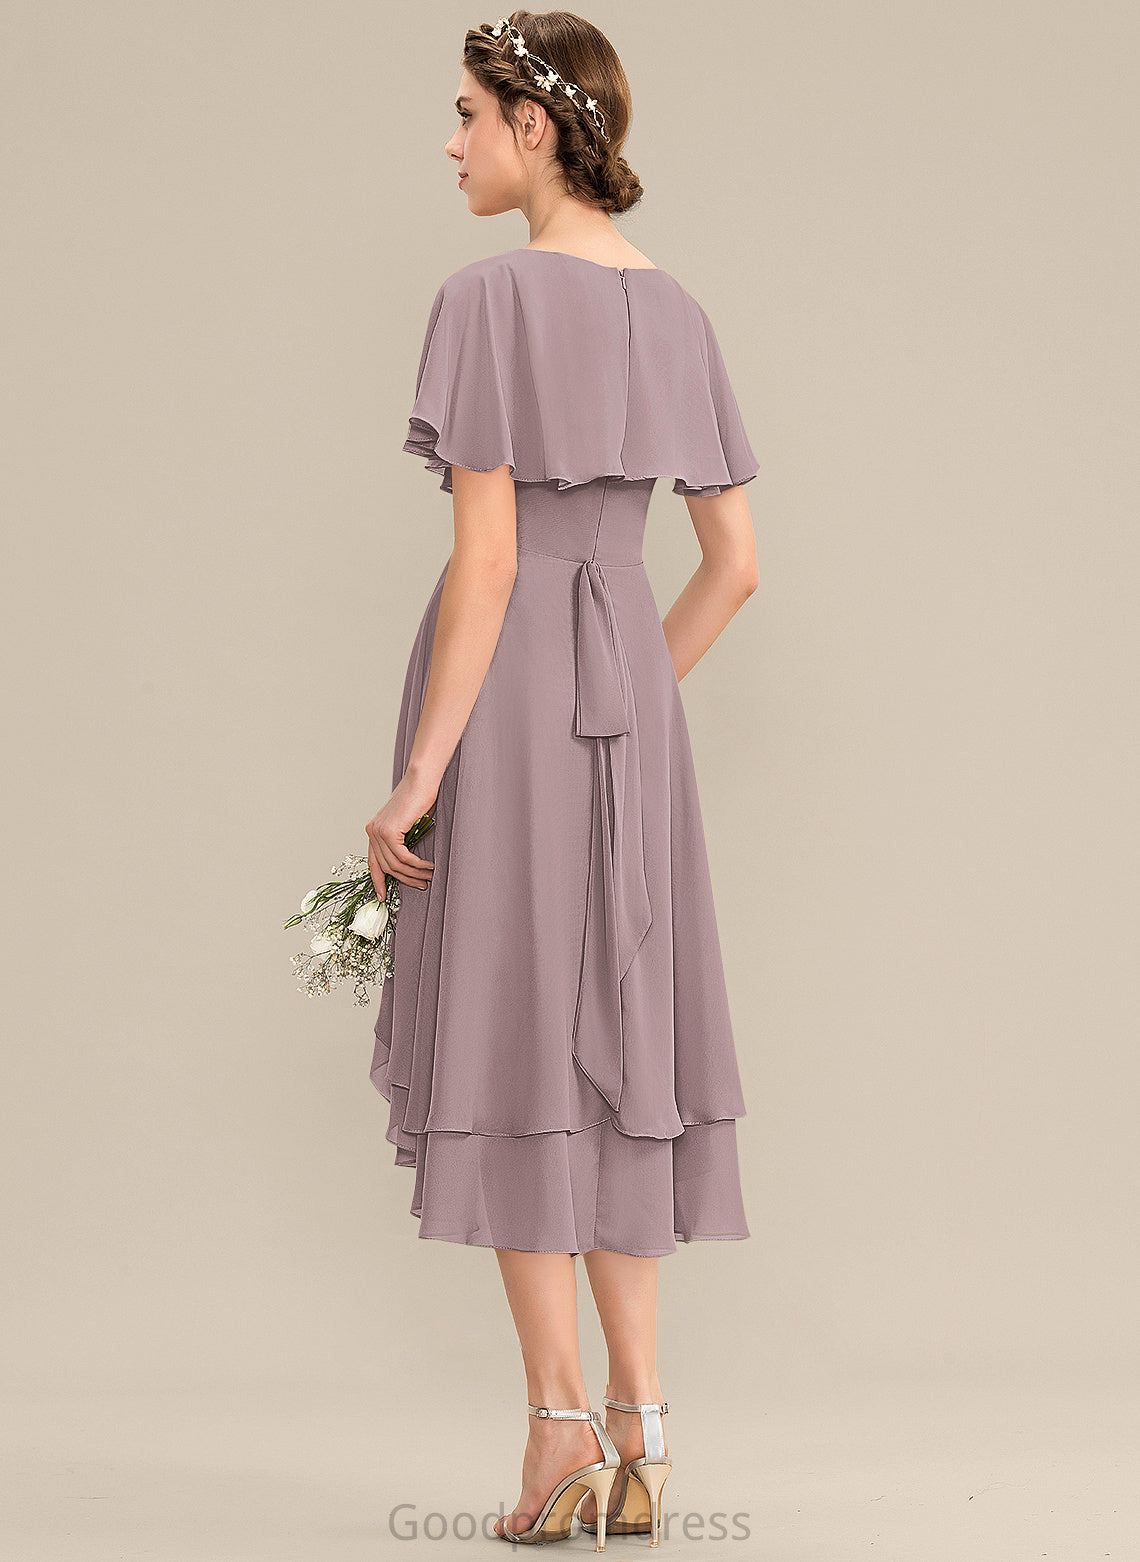 Neckline V-neck Silhouette Asymmetrical Embellishment Fabric Length CascadingRuffles A-Line Rory Sleeveless High Low Bridesmaid Dresses